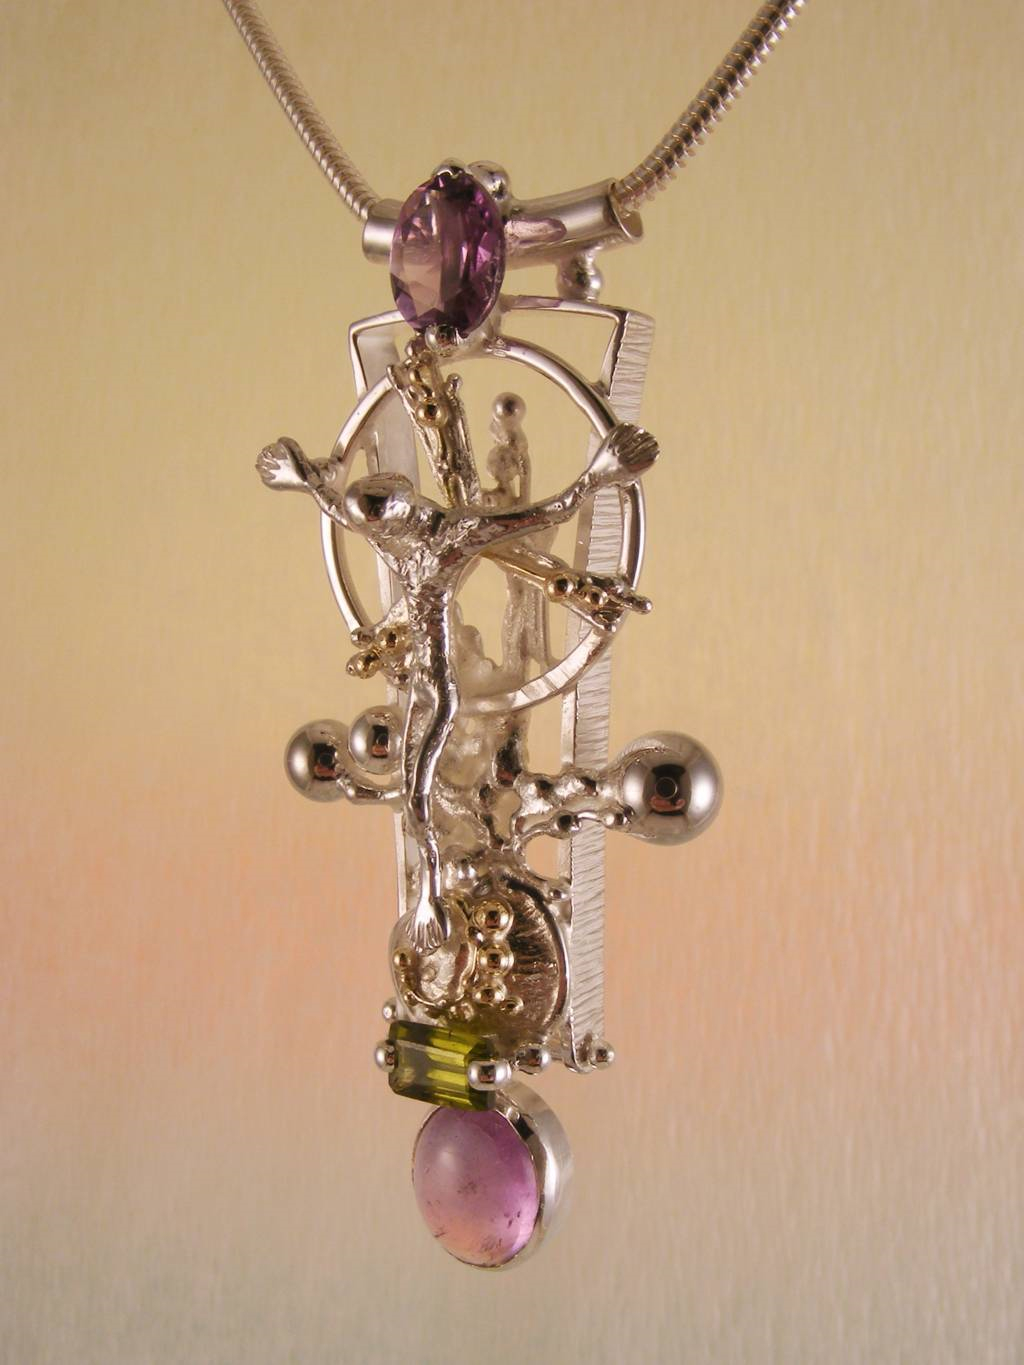 módní šperky, modní styl, sběratelská položka, šperky vyrobené ze stříbra a zlata, ručně vyrobený přívěsek s ametystem a olivínem, Gregory Pyra Piro přívěsek 3050